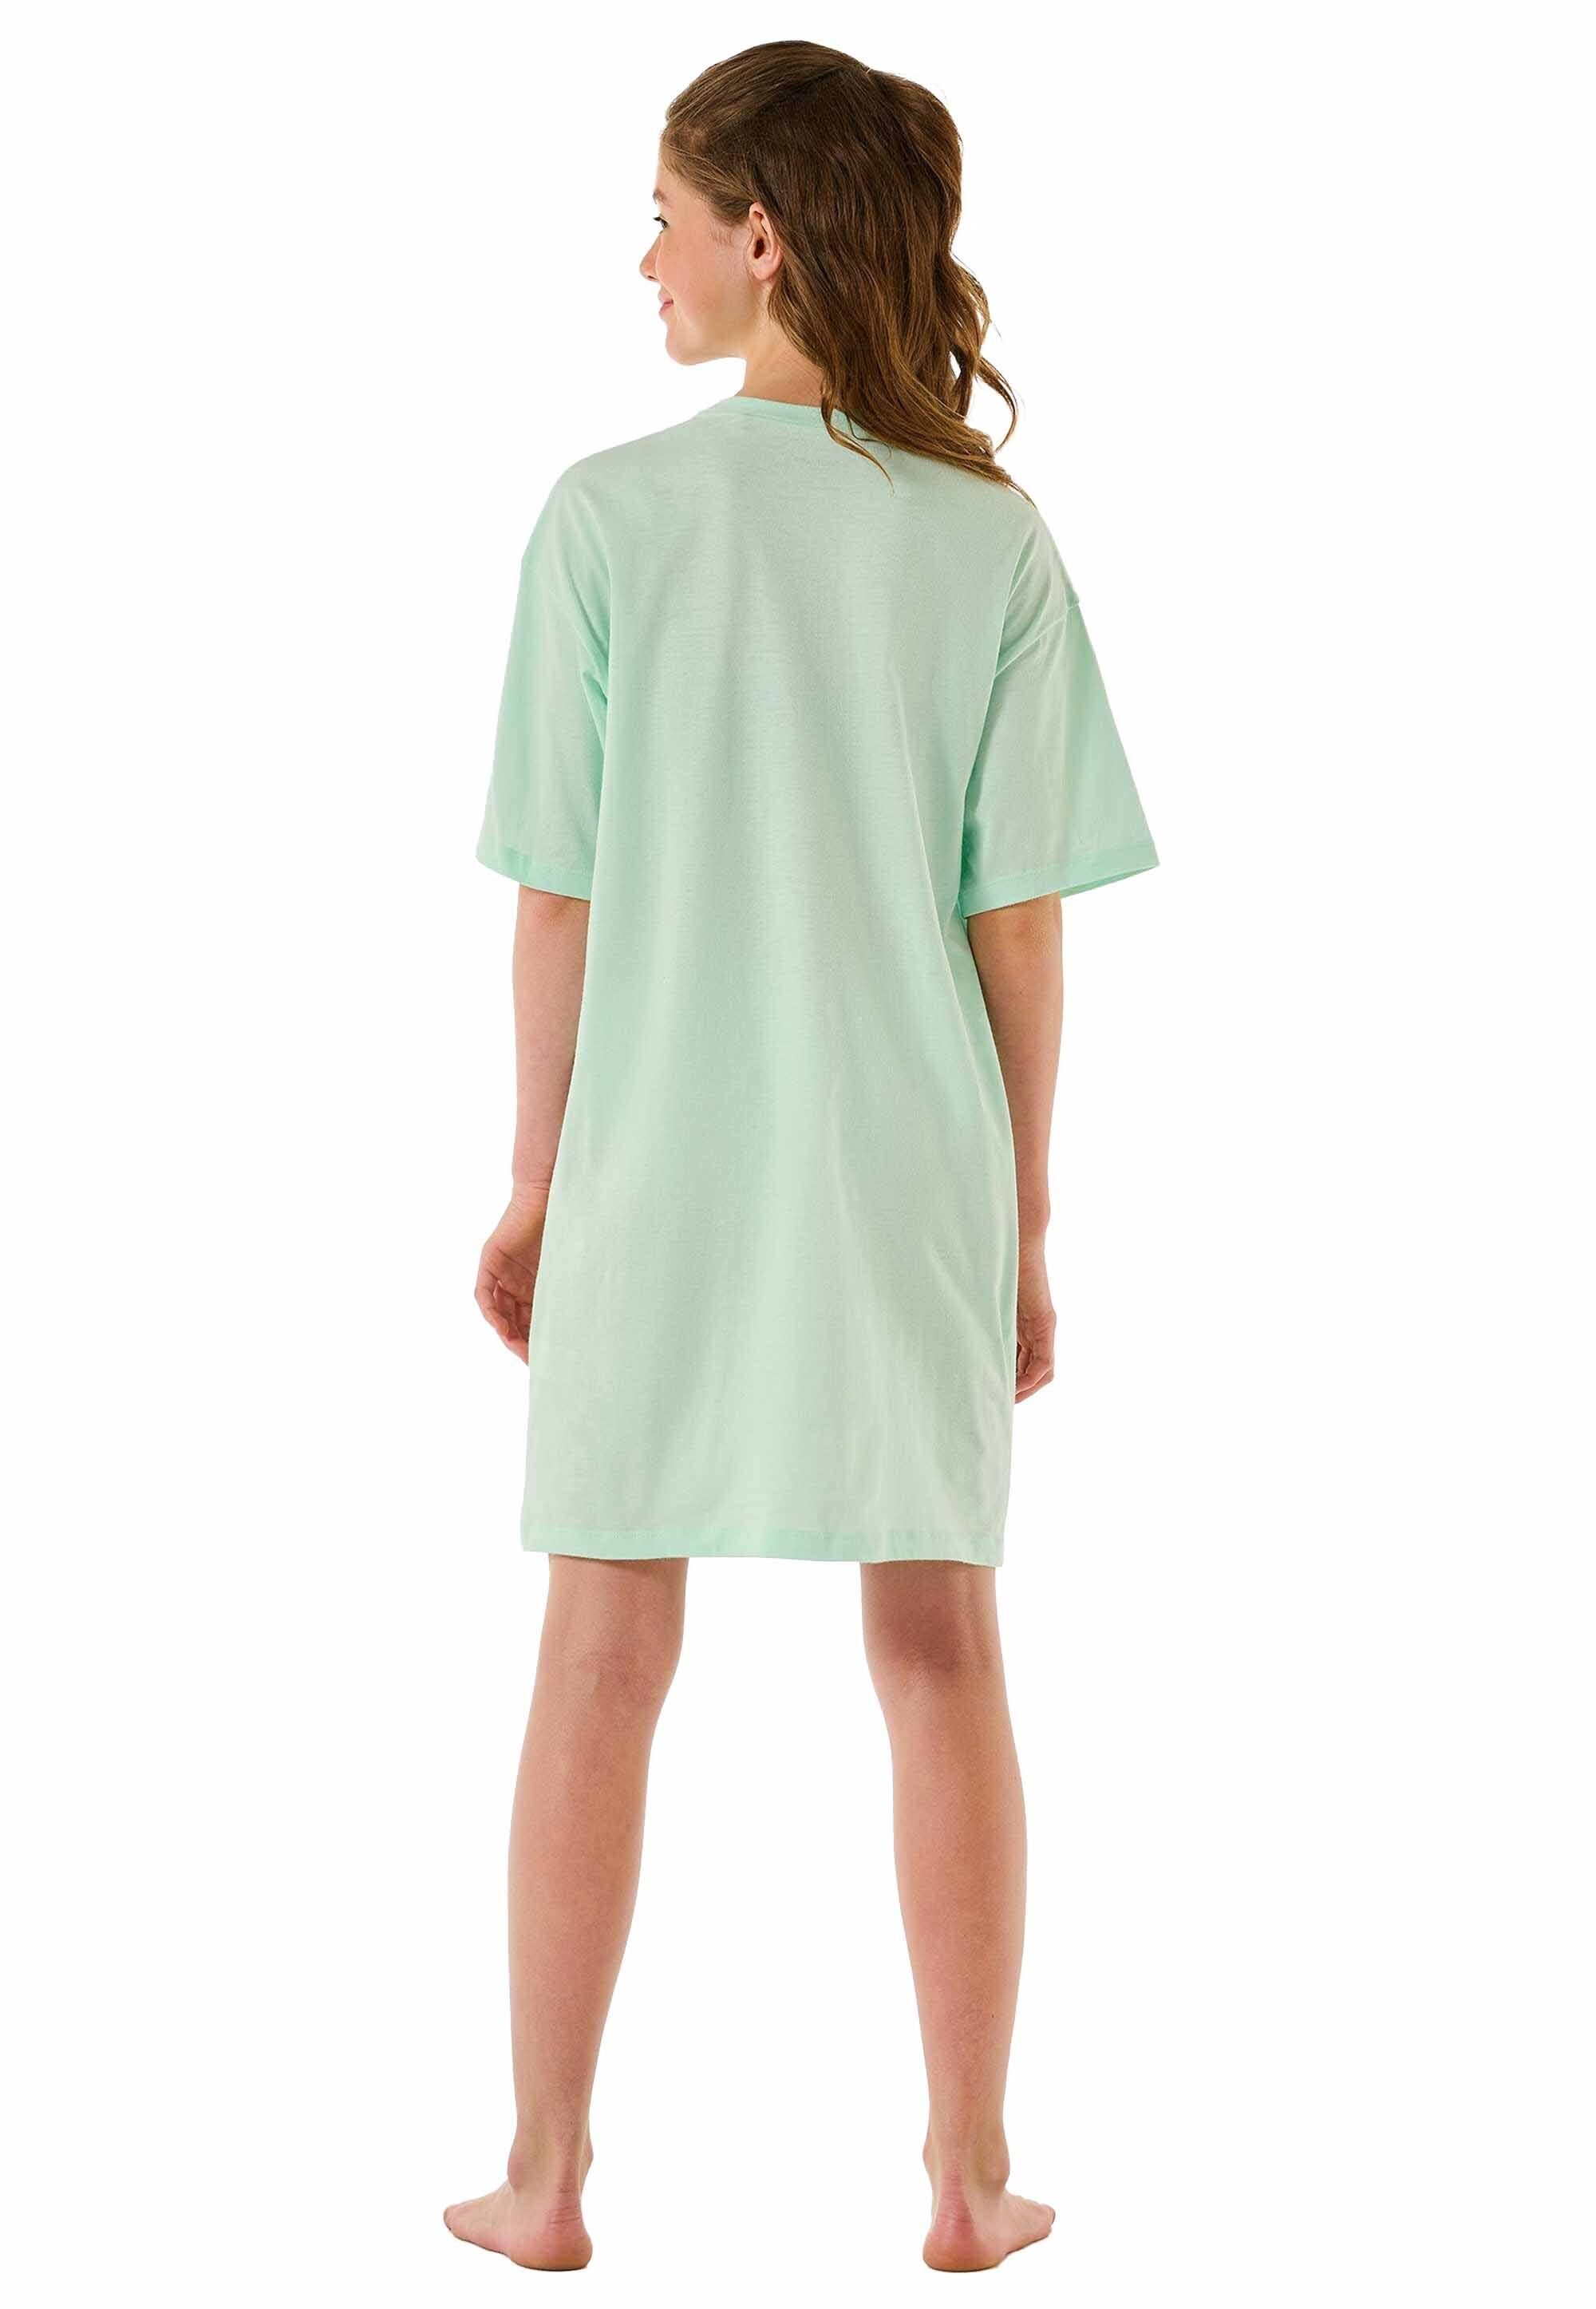 Schiesser Pyjama kurzarm, Mint Sleepshirt, Mädchen Nachthemd - Teens